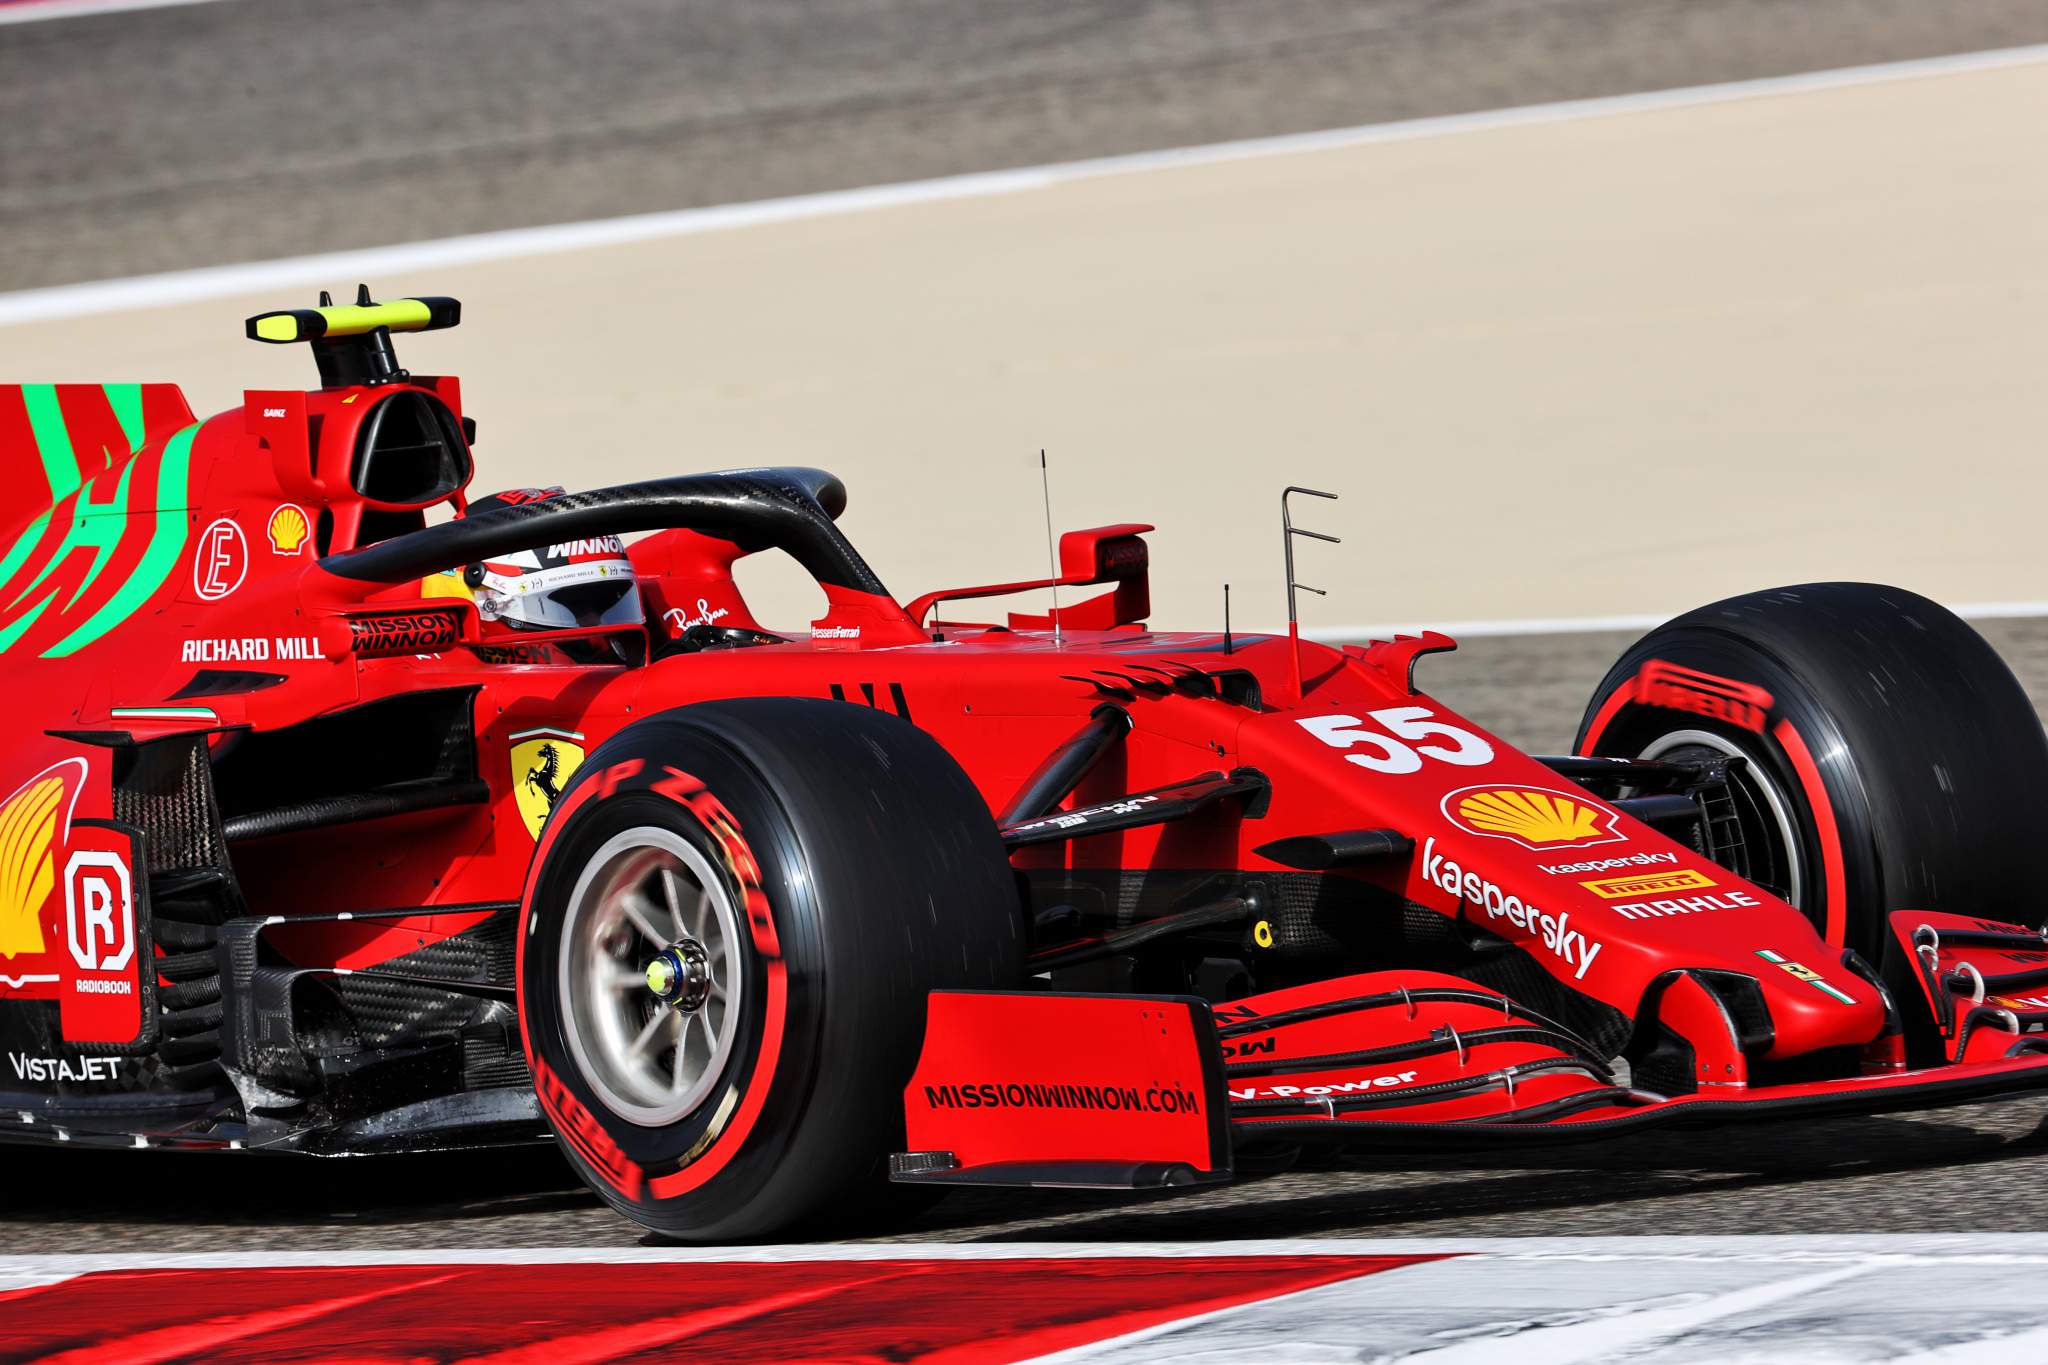 Motor Racing Formula One World Championship Bahrain Grand Prix Practice Day Sakhir, Bahrain